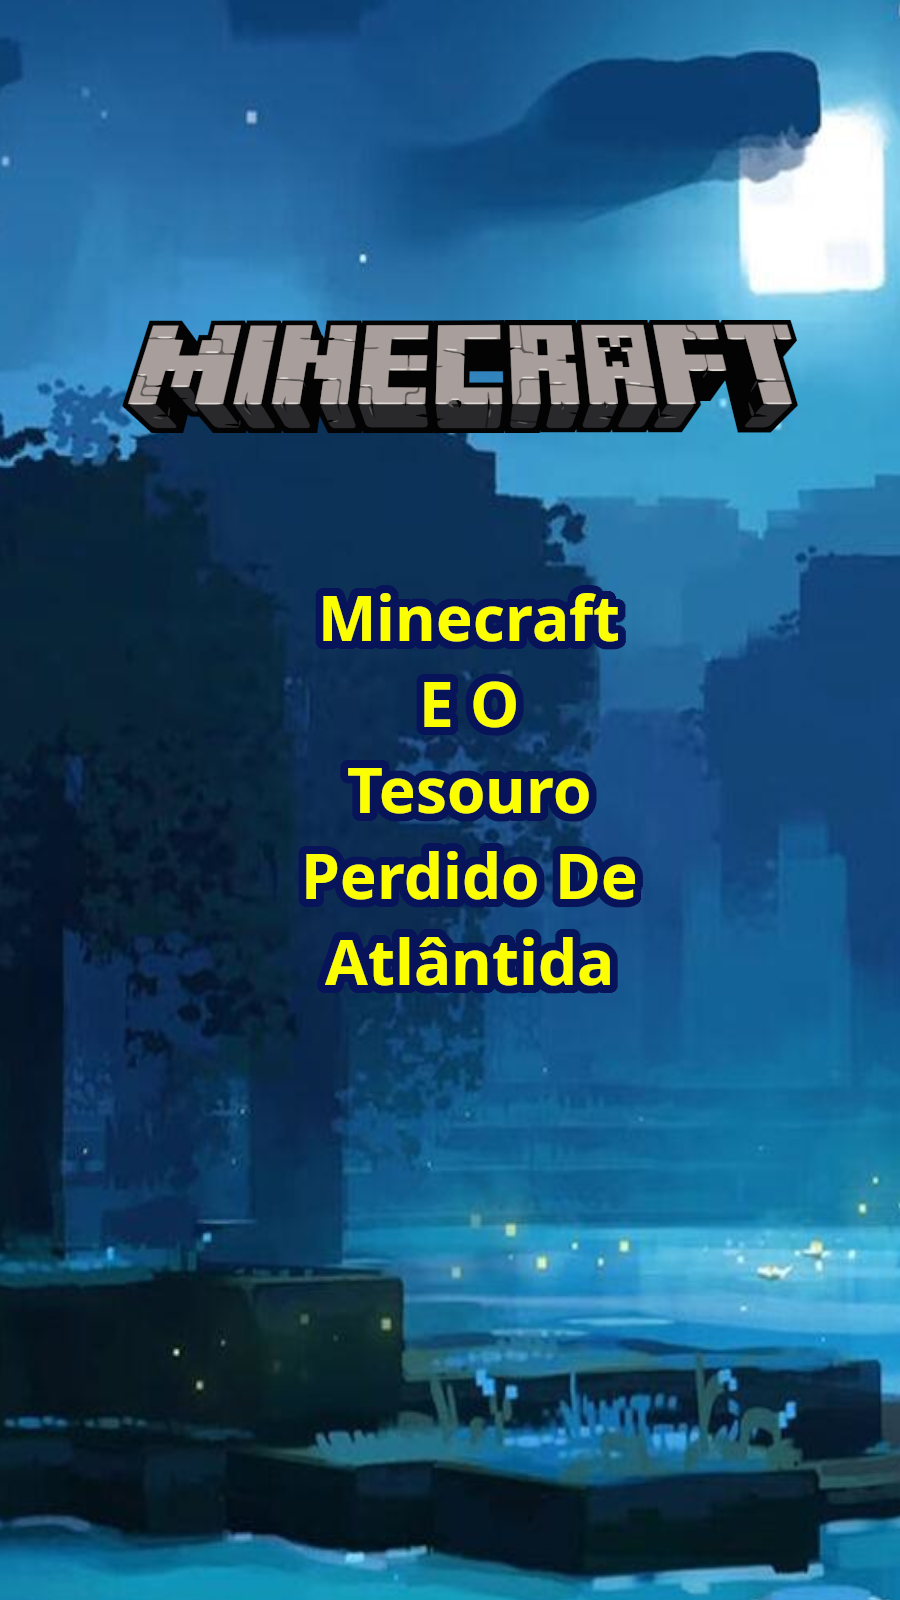 Minecraft e o Tesouro Perdido de Atlântida - Episódio 1